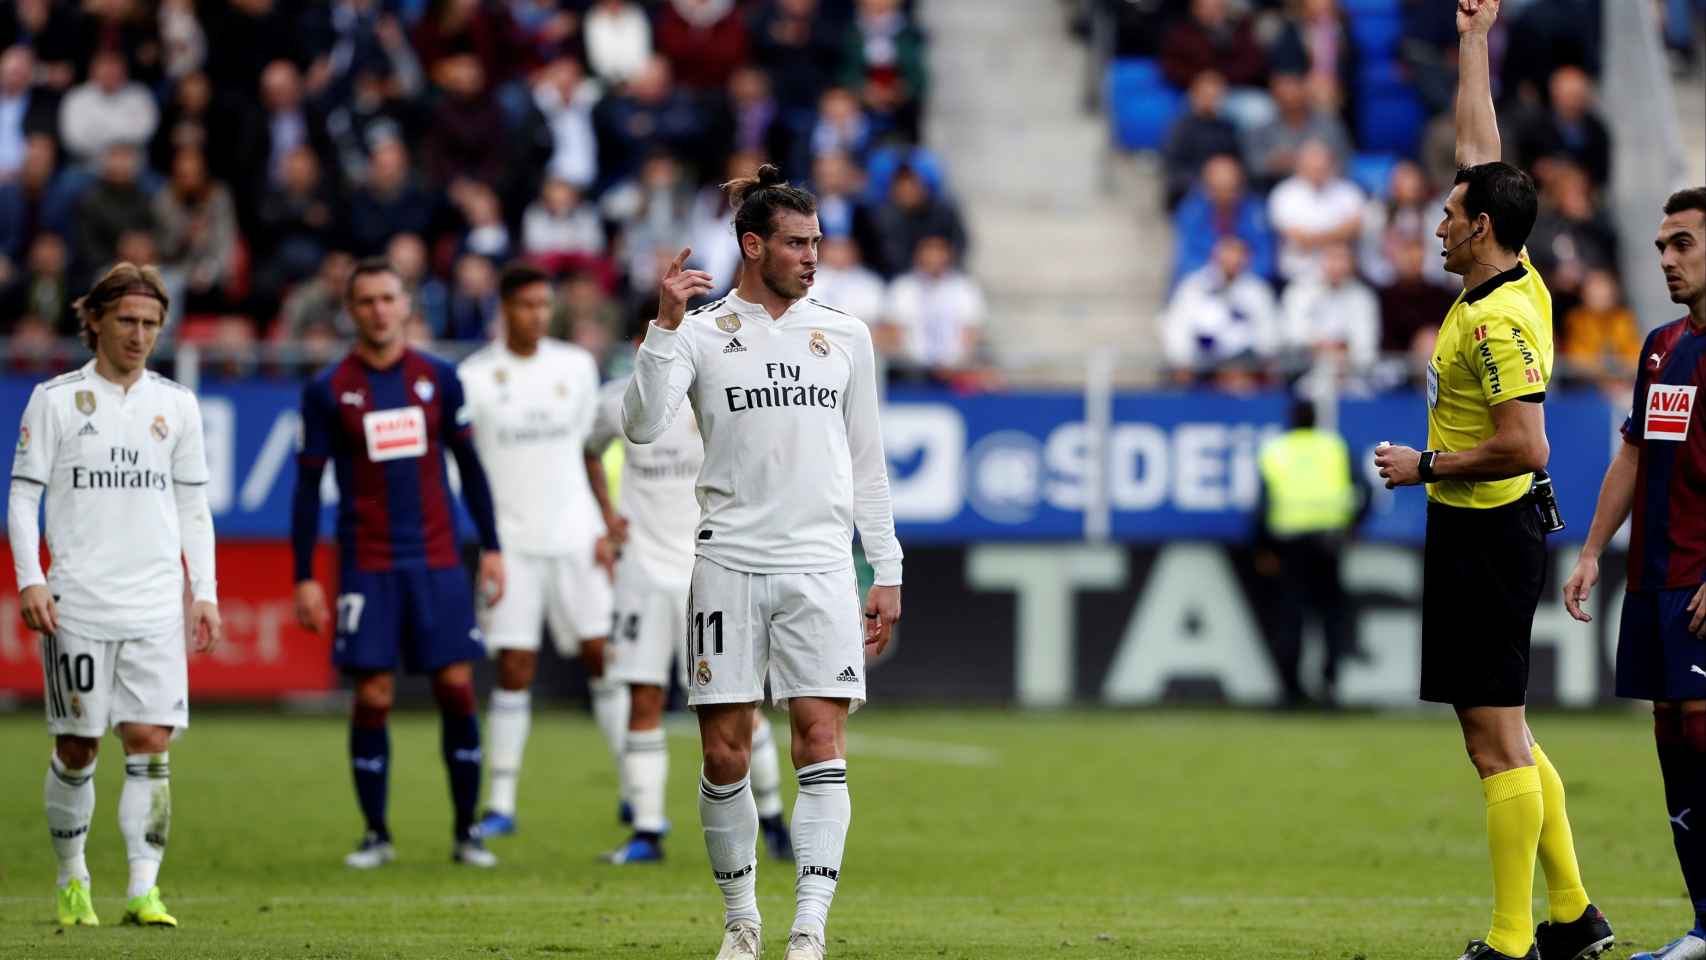 El arbitro Martínez Munuera muestra la tarjeta amarilla a Gareth Bale